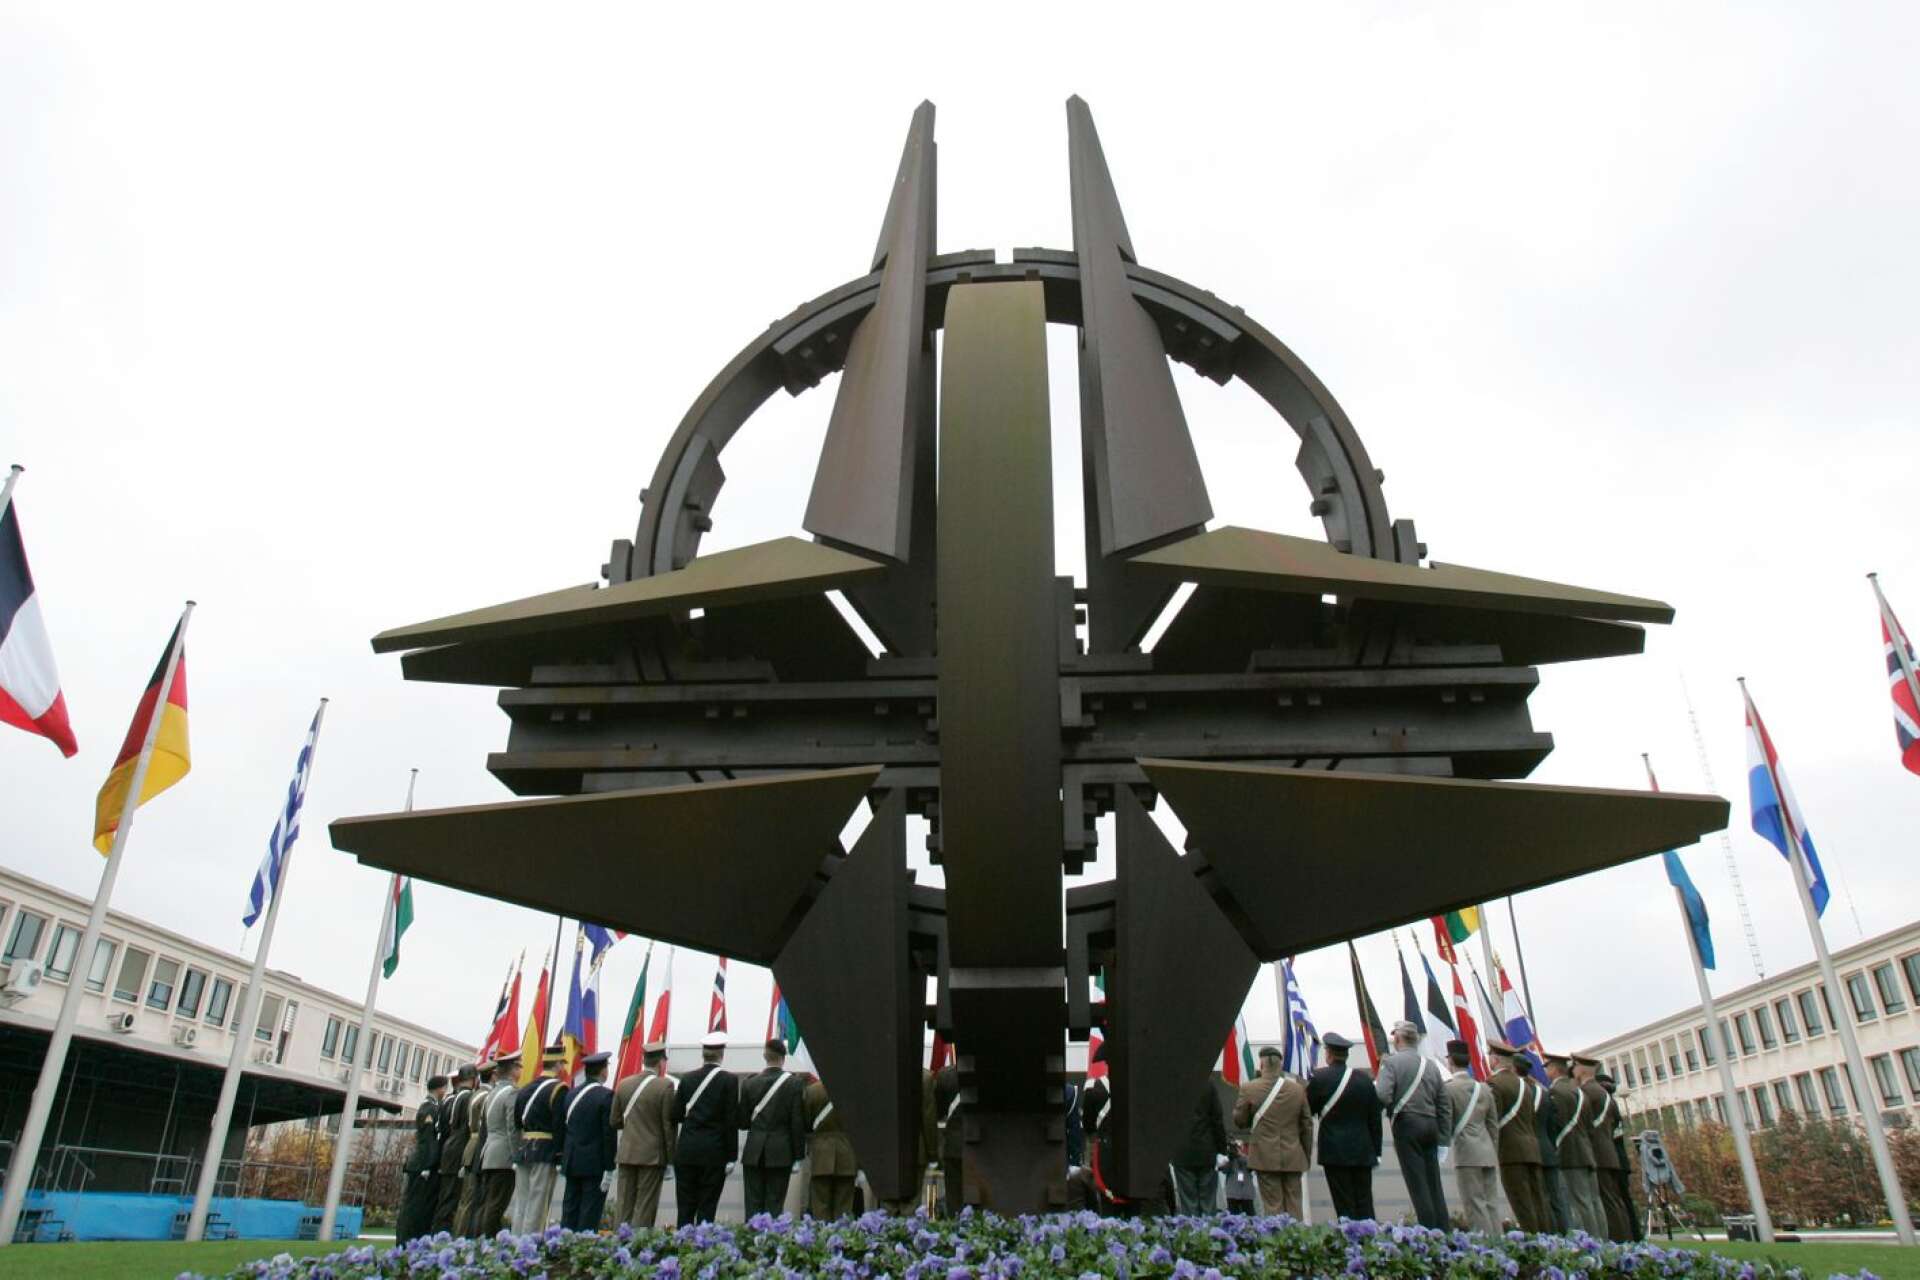 Natofördraget skulle naturligtvis vara lika bindande för Sverige som för andra medlemmar, skriver Jesper Johansson med flera. Foto Virginia Mayo/AP